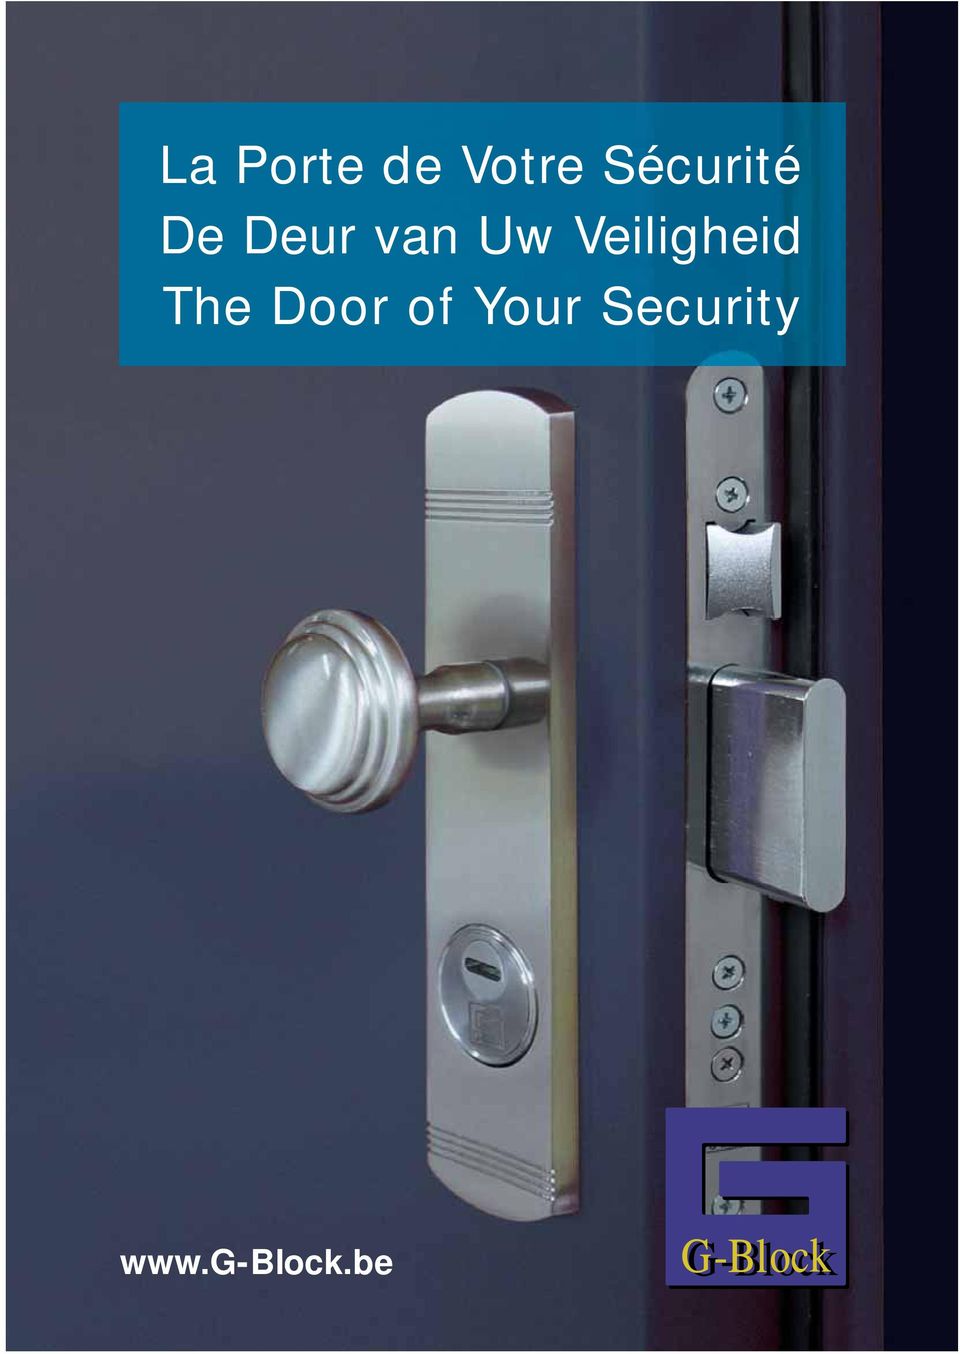 Veiligheid The Door of